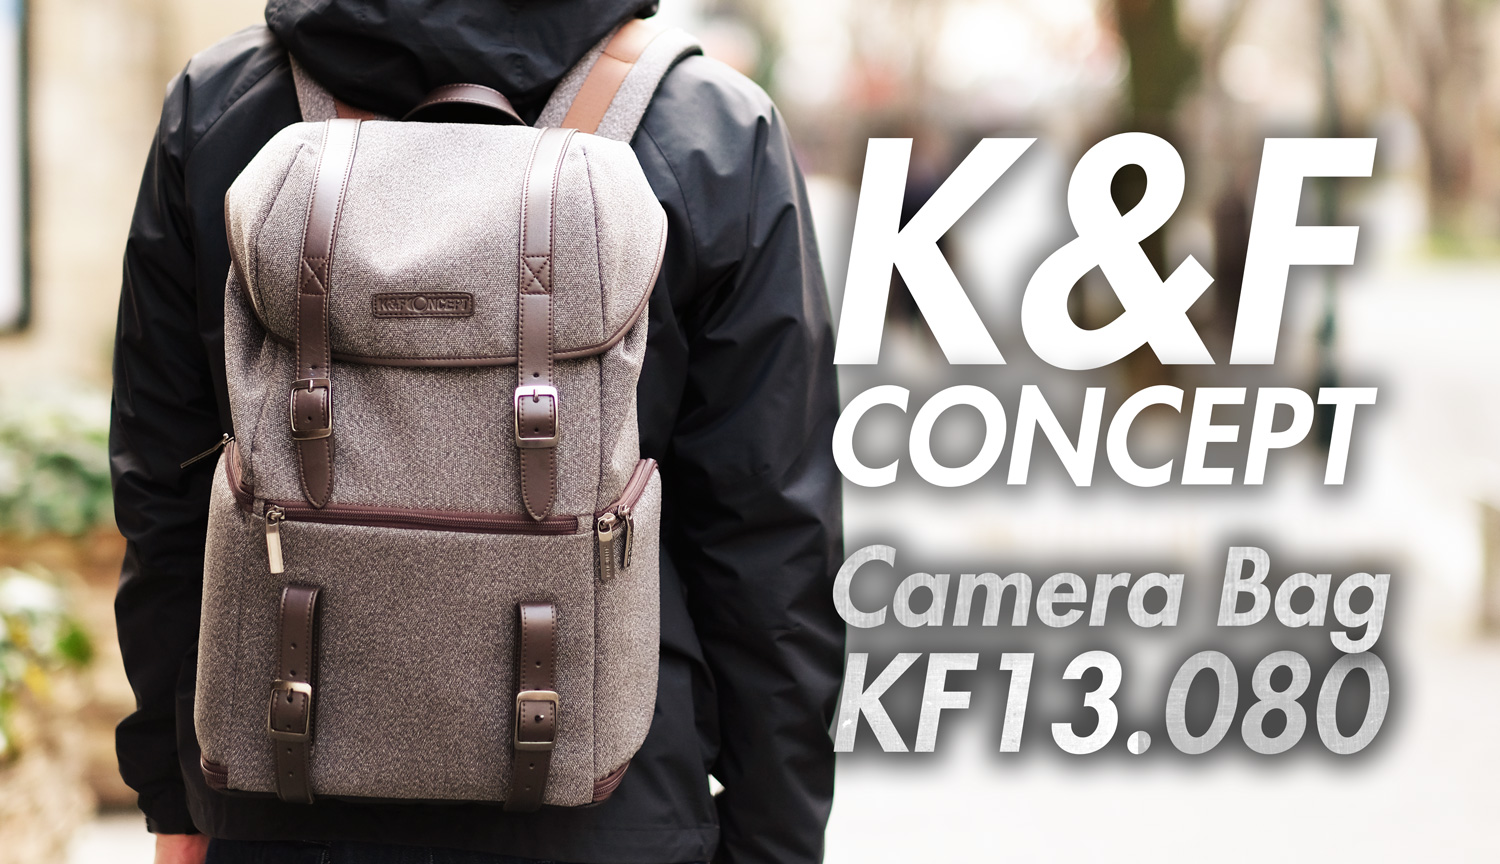 K&F ConceptのカメラバッグKF13.080は、おしゃれで使い勝手も良かった ...